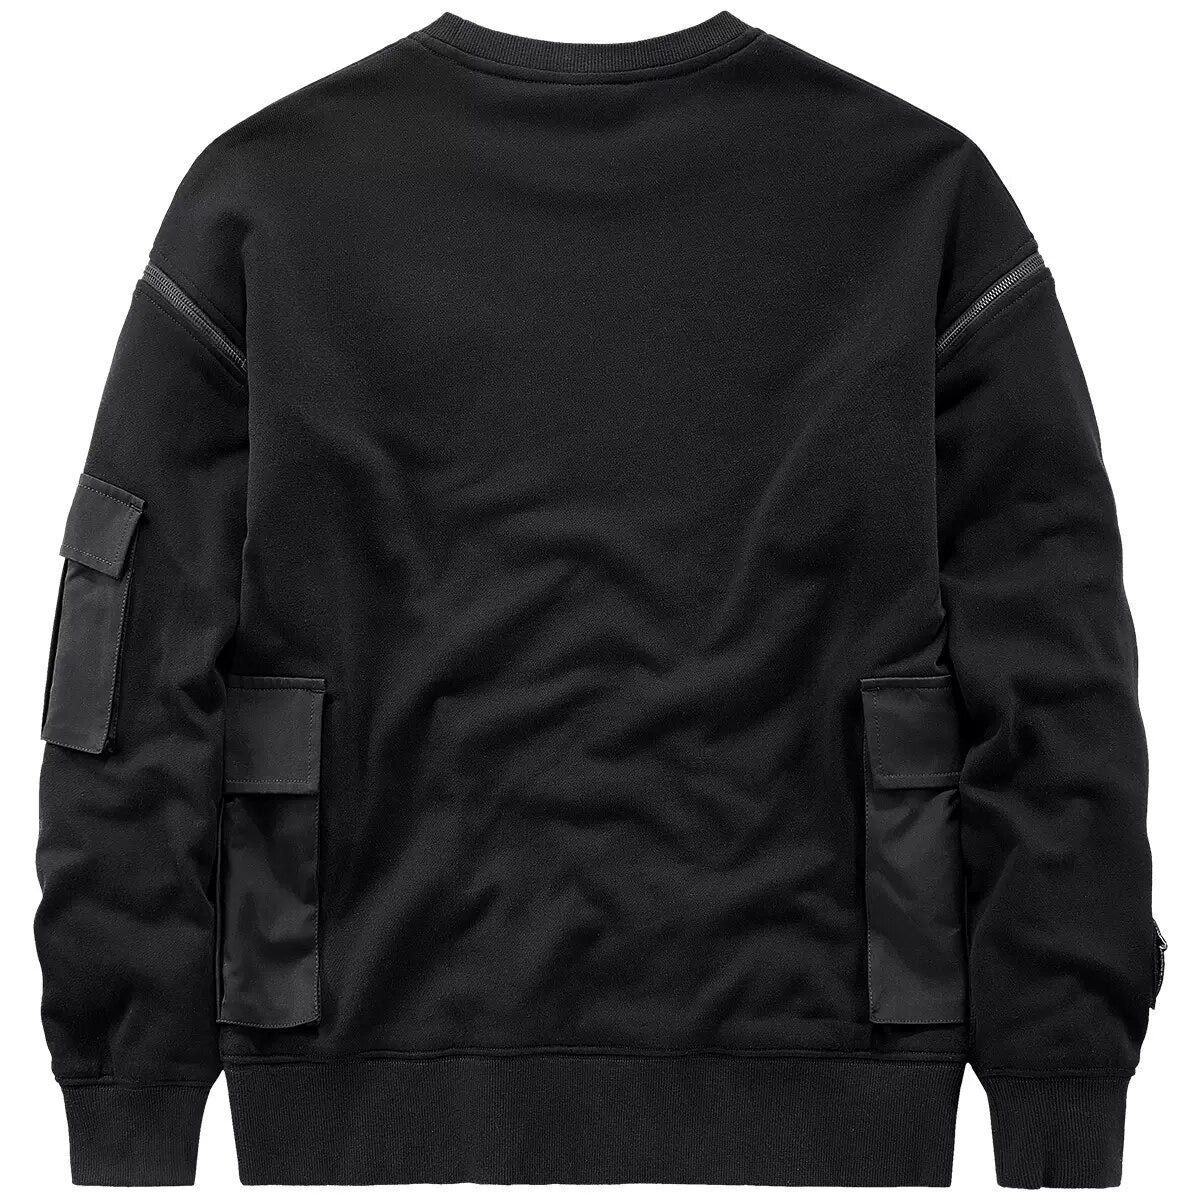 Ninja Sweatshirt Techwear | CYBER TECHWEAR®